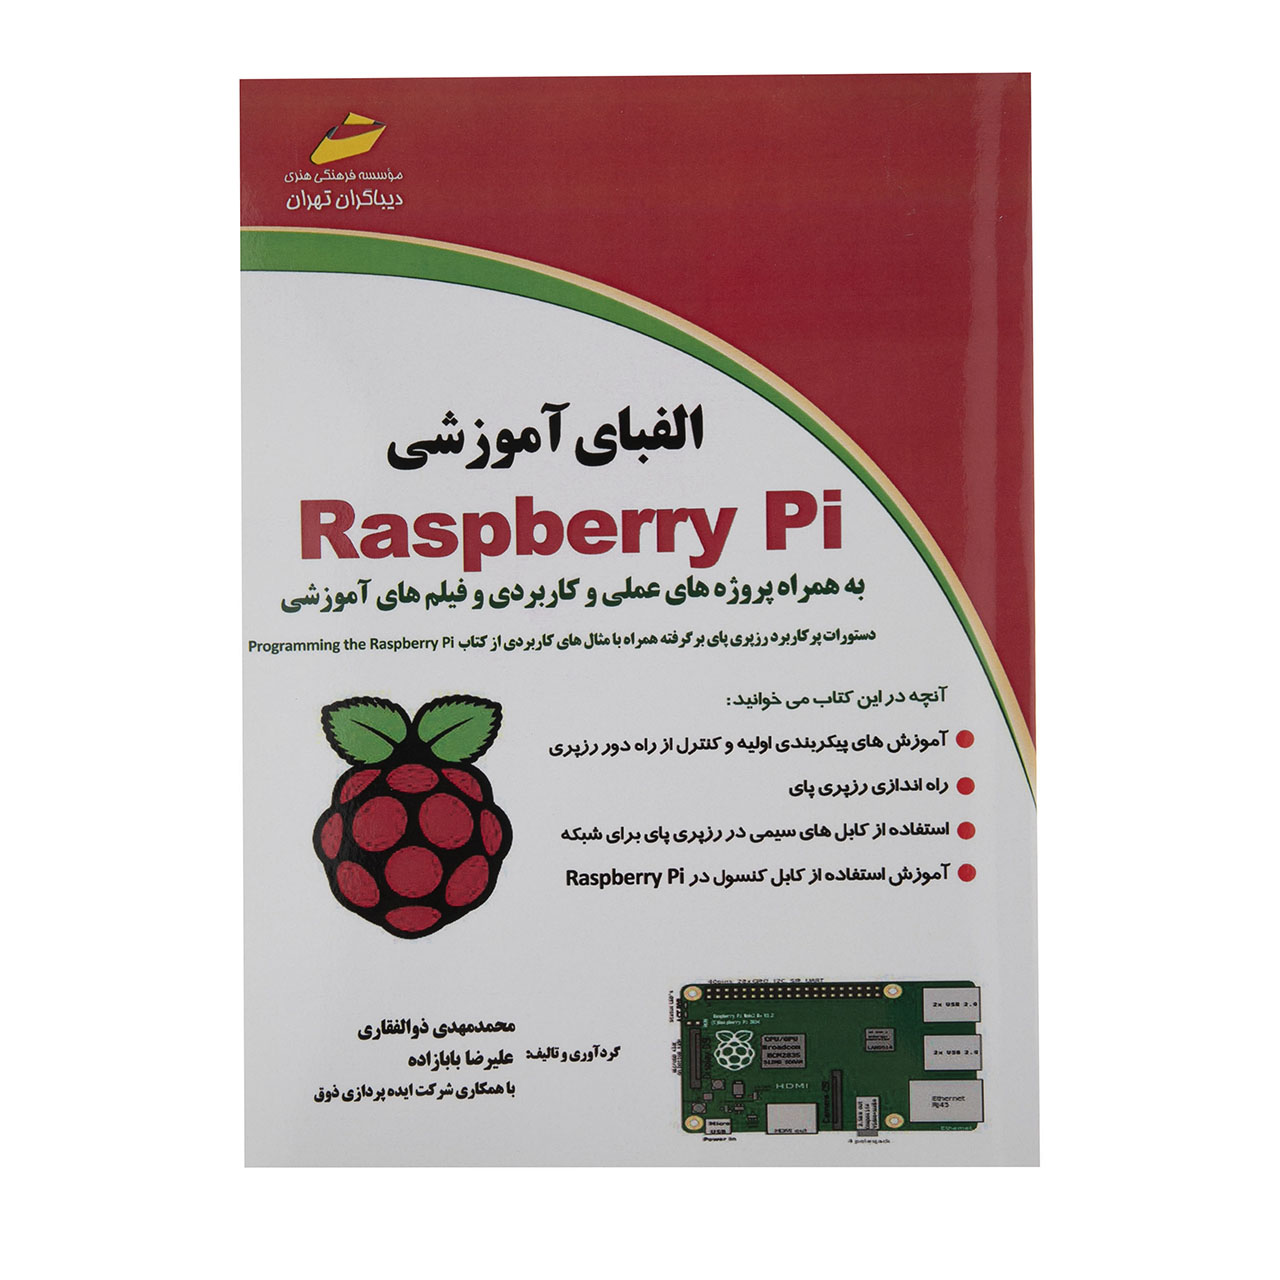 کتاب الفبای آموزشی Raspberry Pi اثر محمدمهدی ذوالفقاری نشر دیباگران تهران